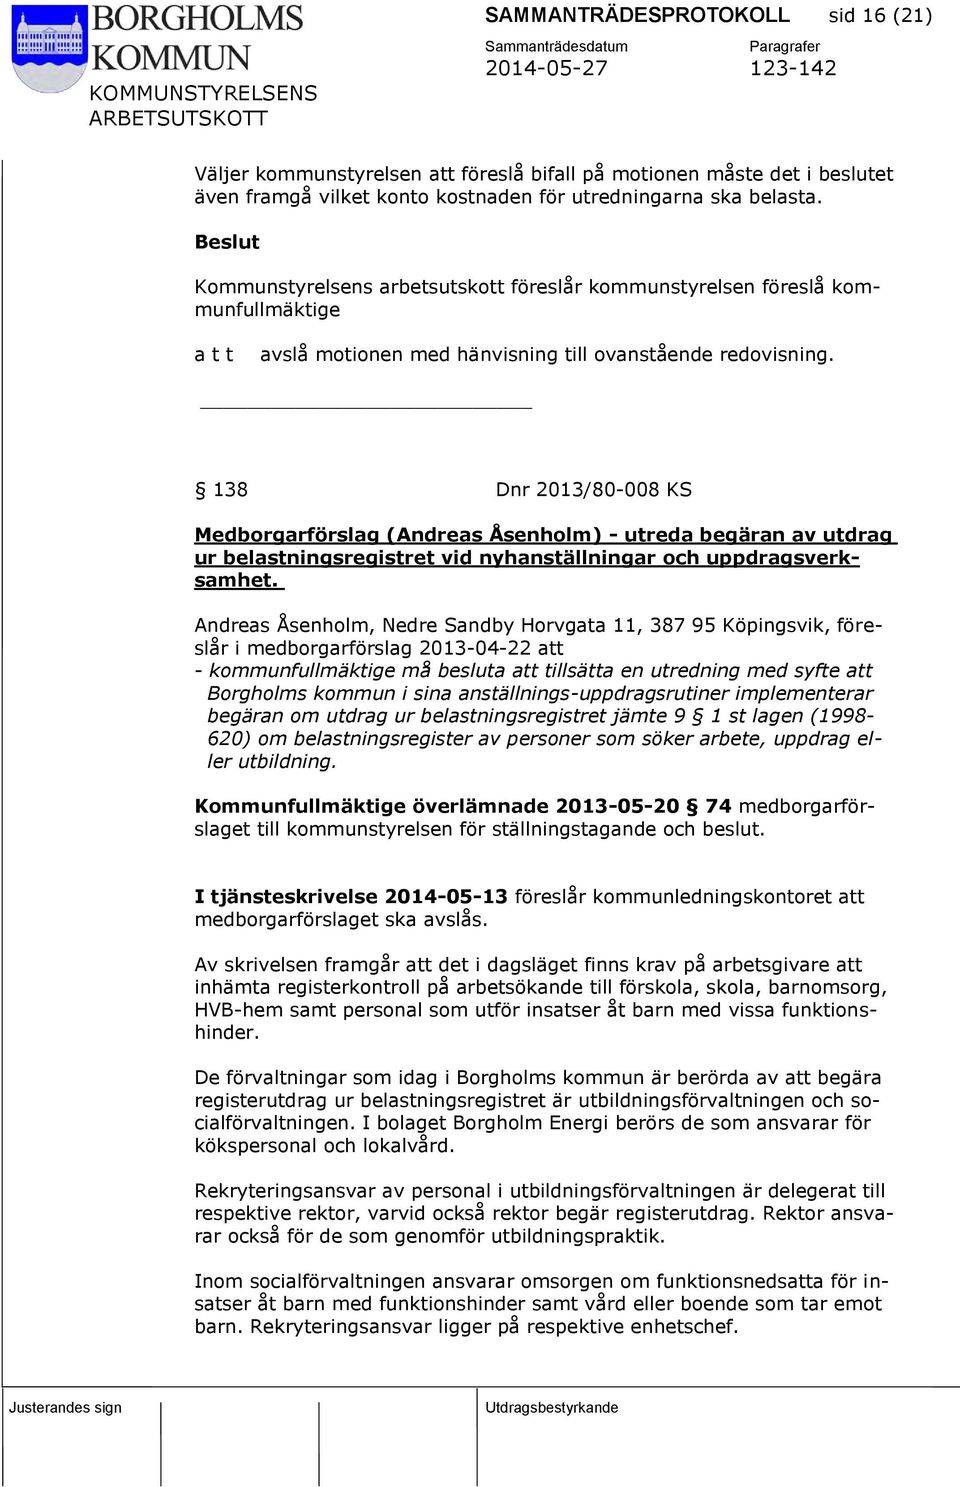 138 Dnr 2013/80-008 KS Medborgarförslag (Andreas Åsenholm) - utreda begäran av utdrag ur belastningsregistret vid nyhanställningar och uppdragsverksamhet.